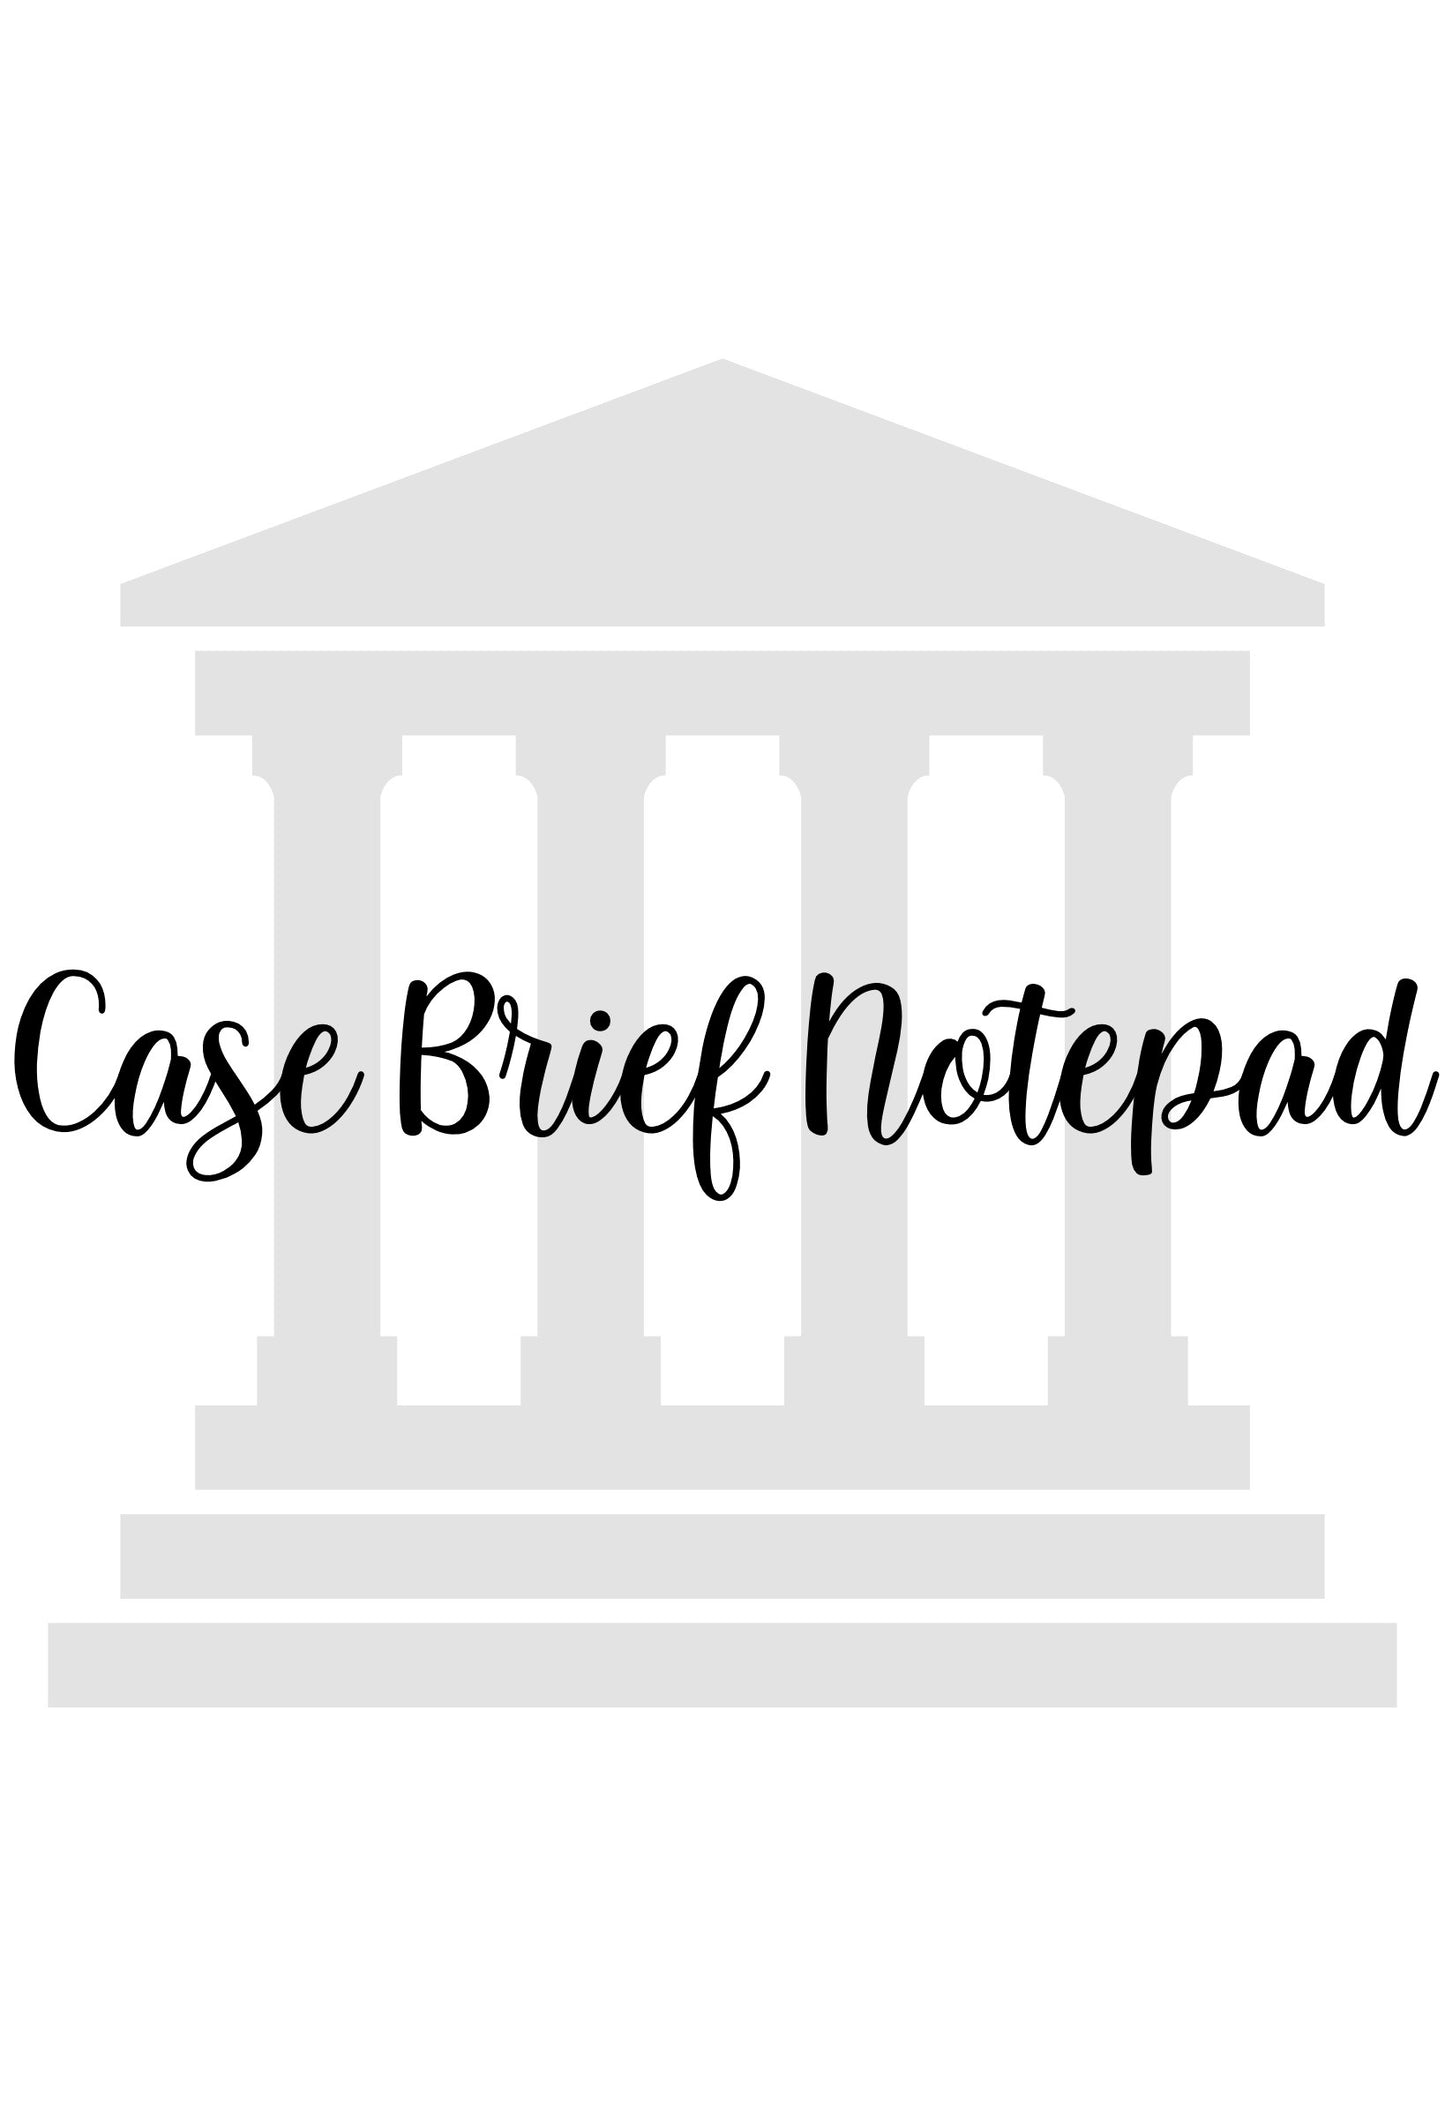 Case Brief Notepad (Version 1)